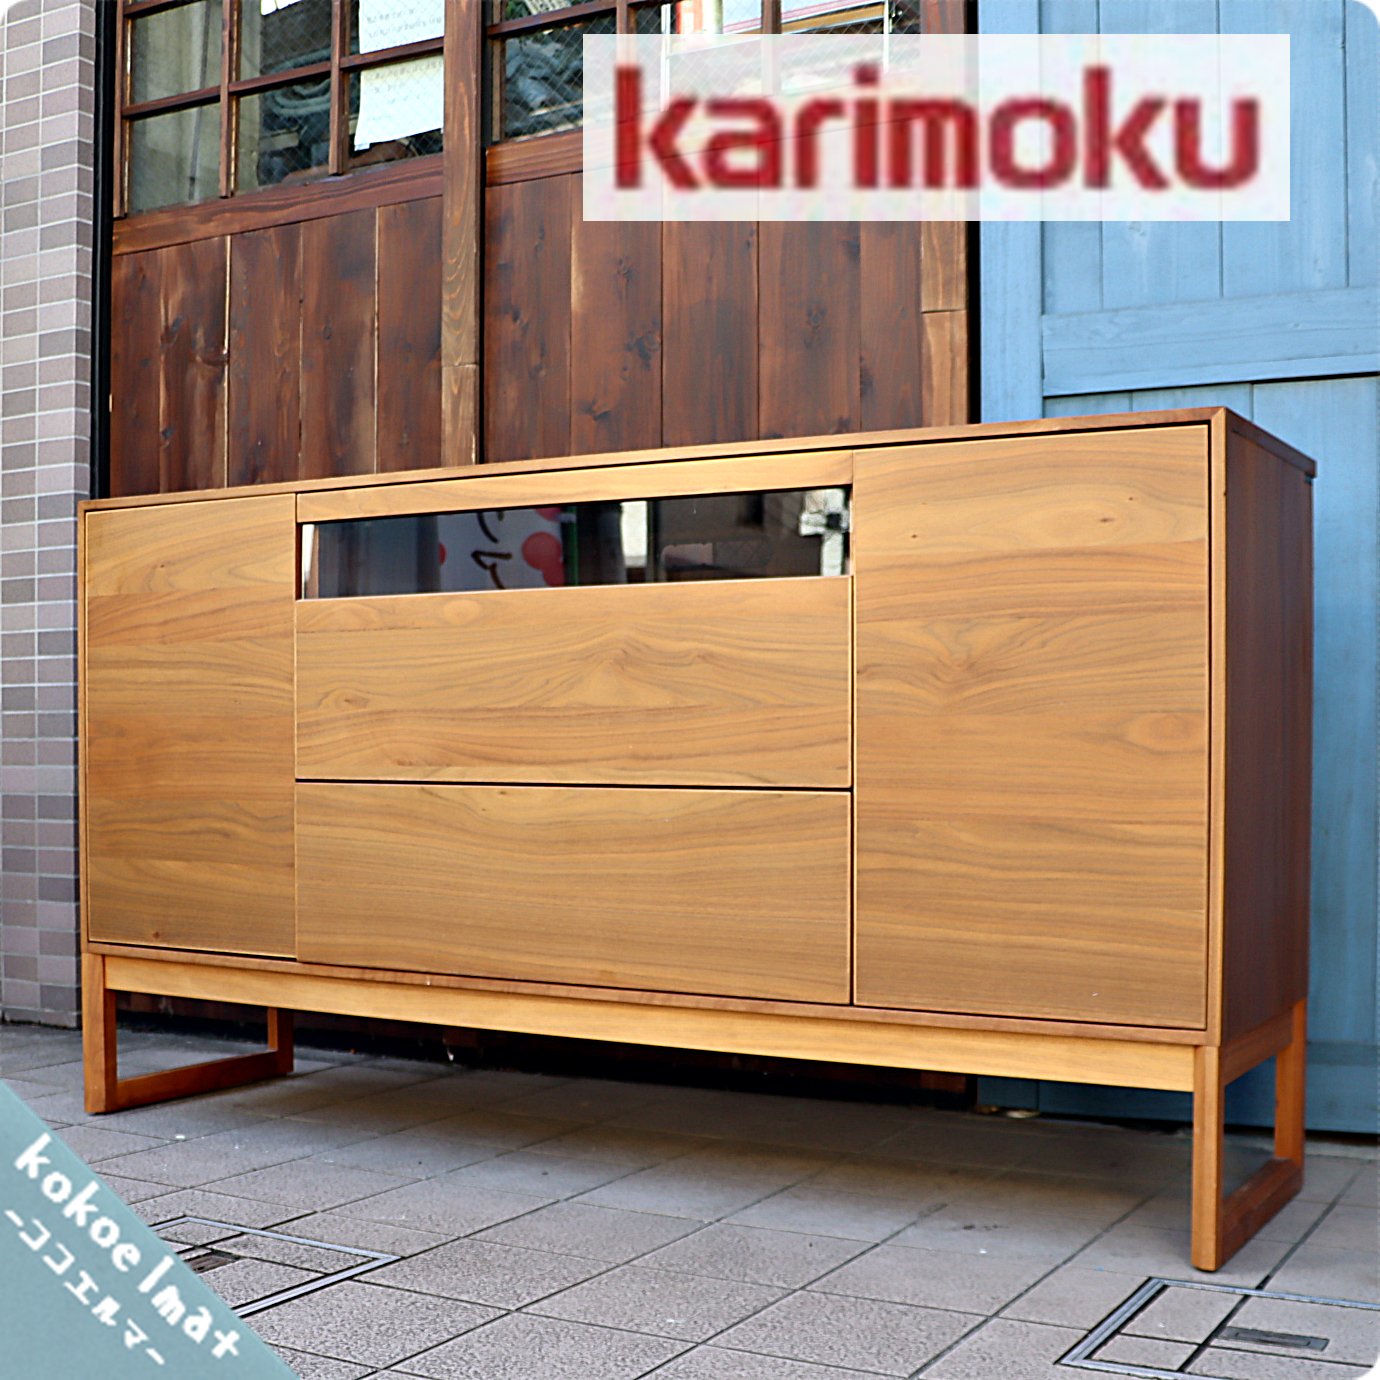 karimoku(カリモク家具) HU5137XRF ウォールナット材 サイドボードです。シンプルなデザインとナチュラル感が魅力のリビングボード。北欧 テイストやスタイリッシュなインテリアに♪ - kokoelma -ココエルマ- 雑貨・中古家具・北欧家具・アンティーク家具の通販 インテリア ...